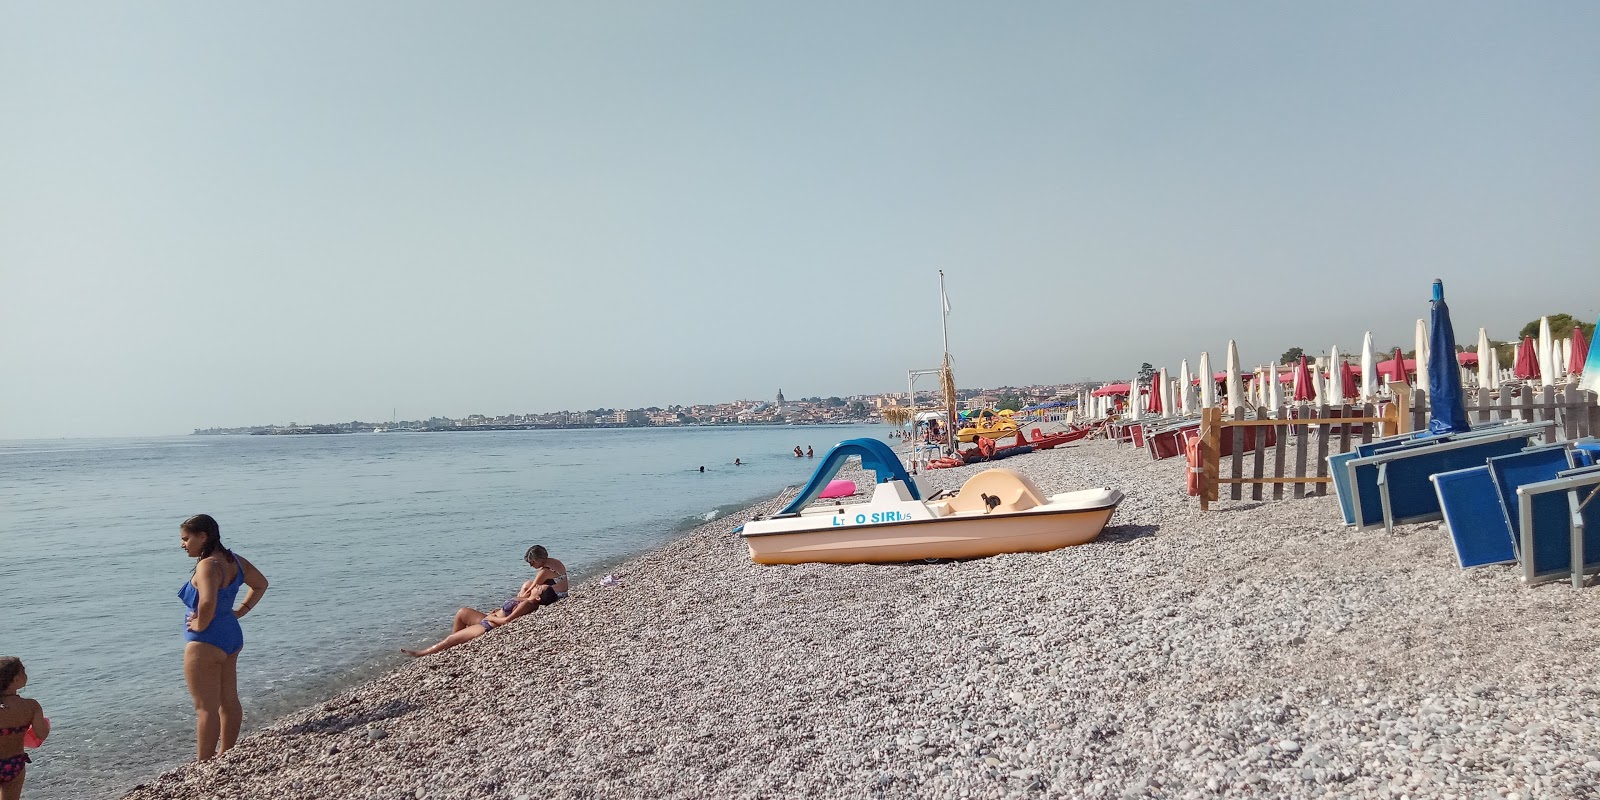 Foto von Spiaggia di Sant'Anna - guter haustierfreundlicher Ort für den Urlaub